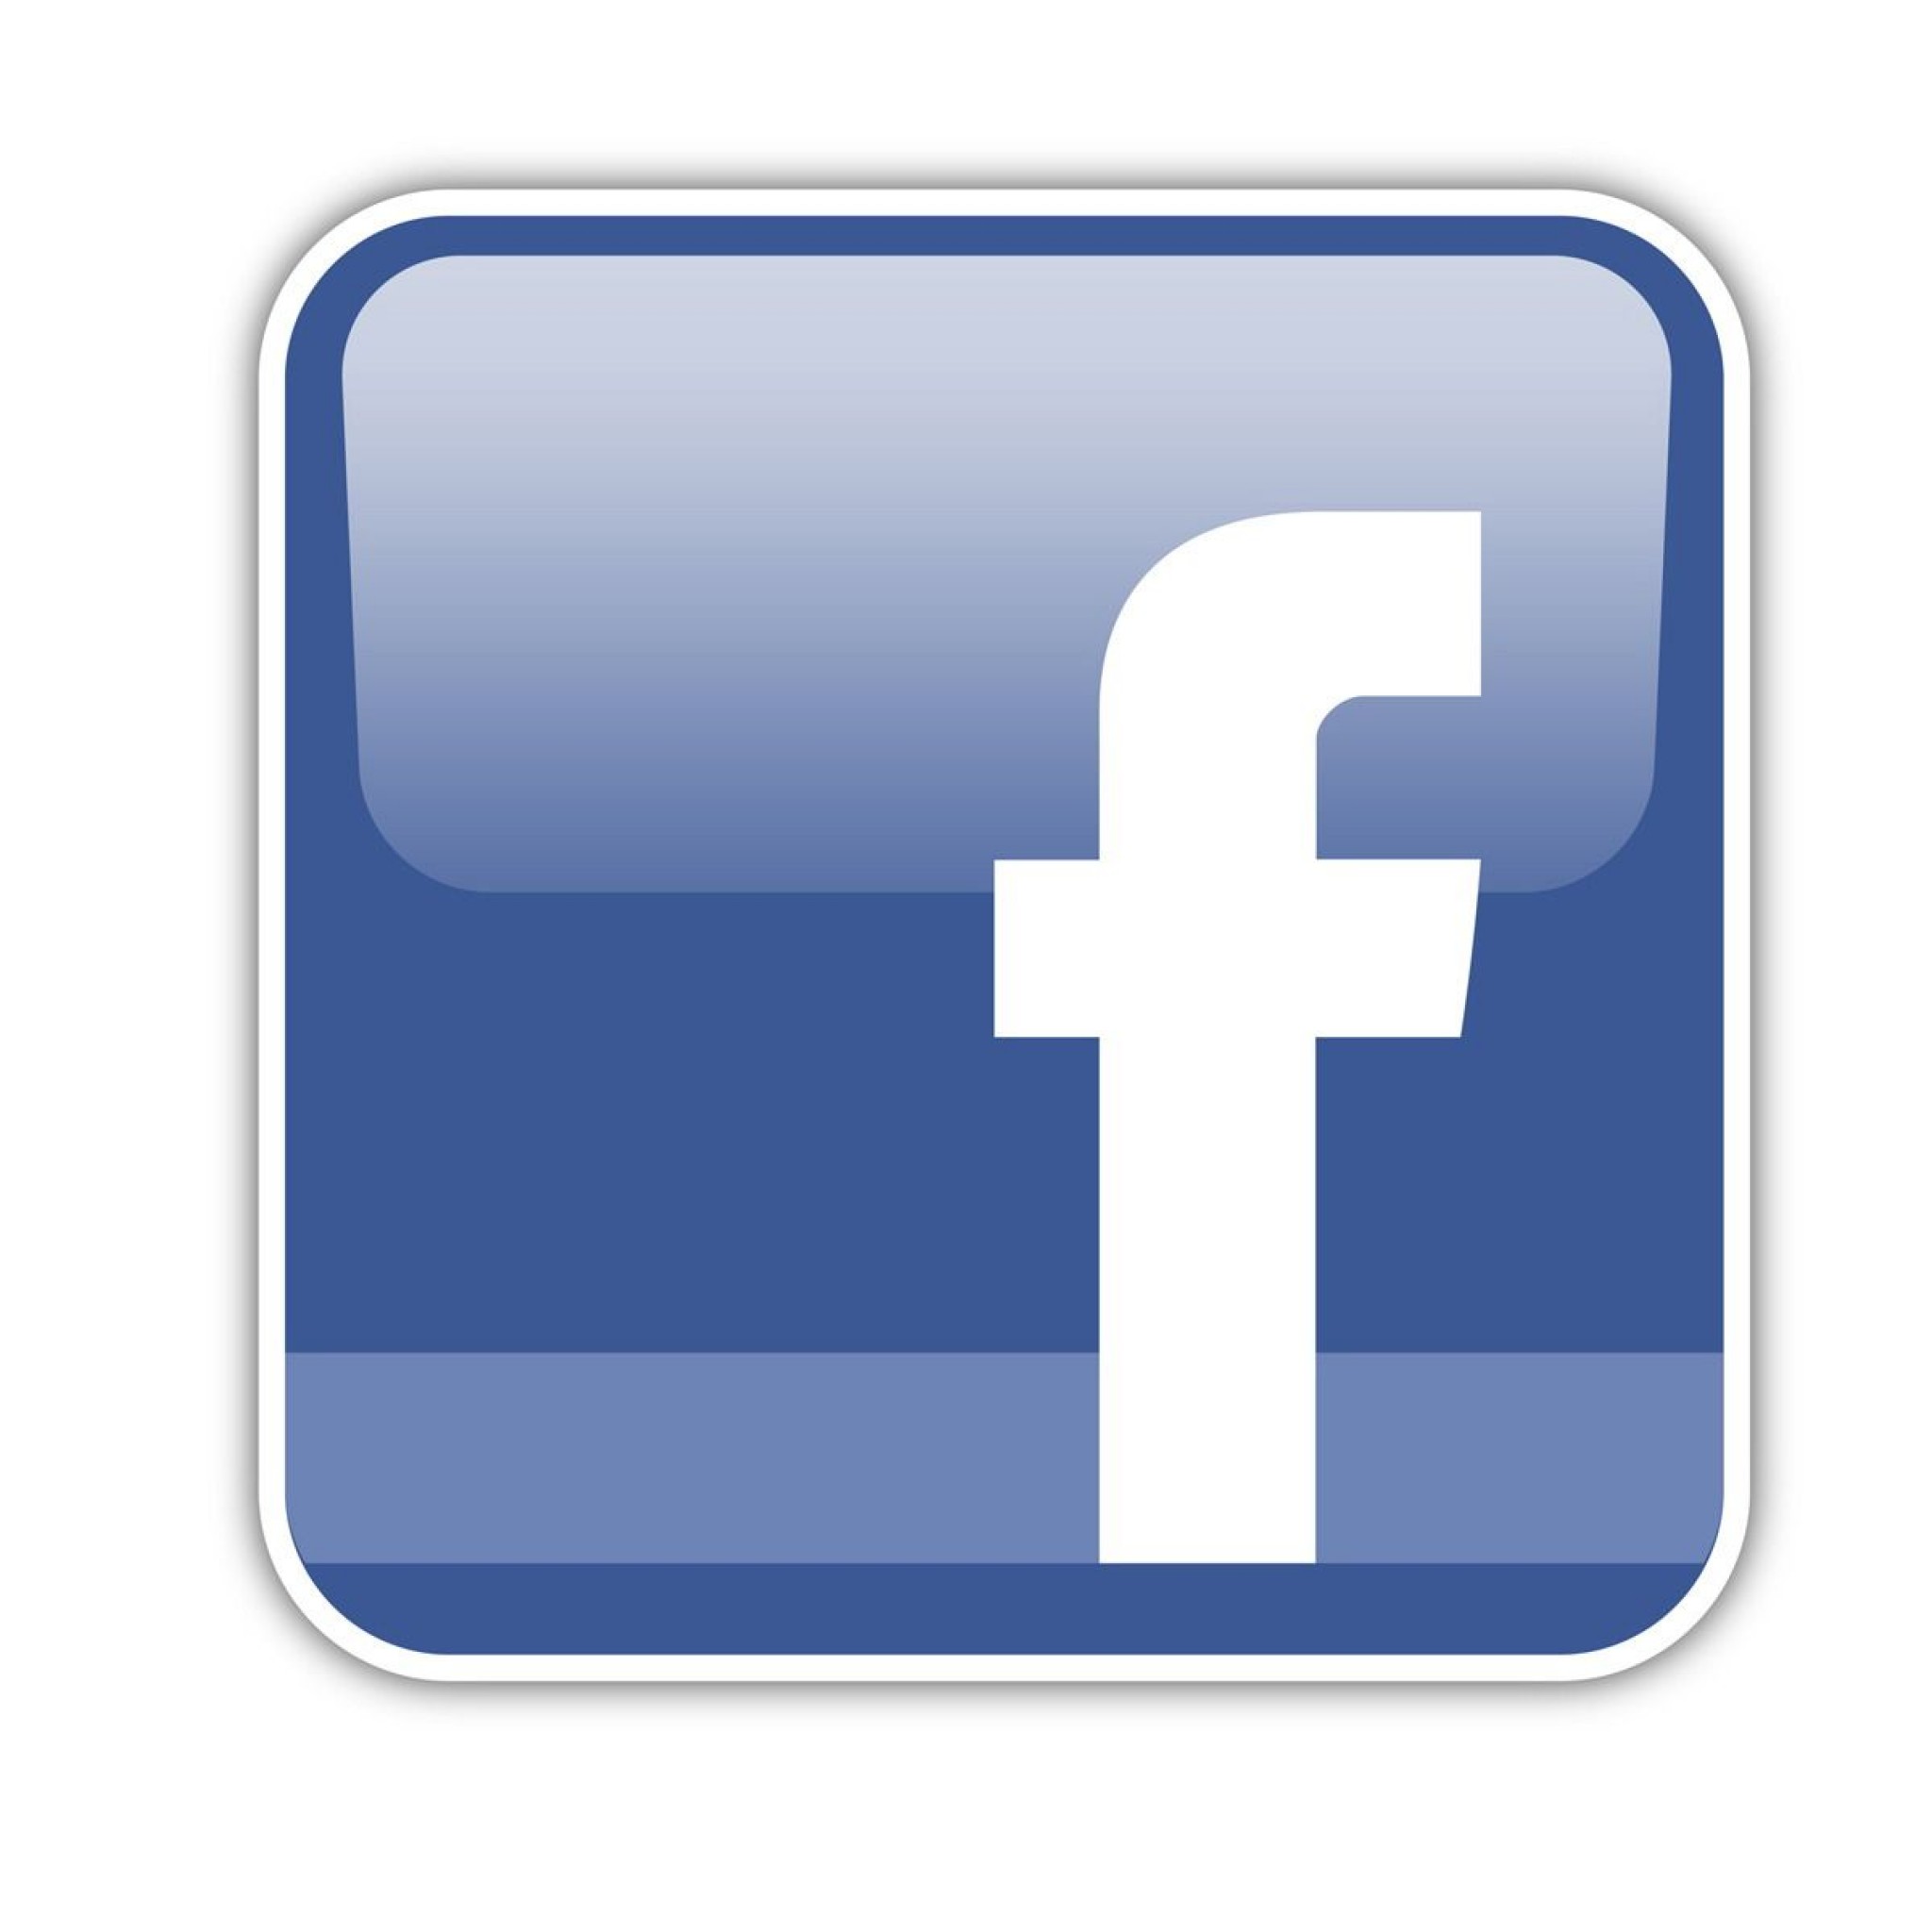 astrology-hvezda-prague-facebook-logo